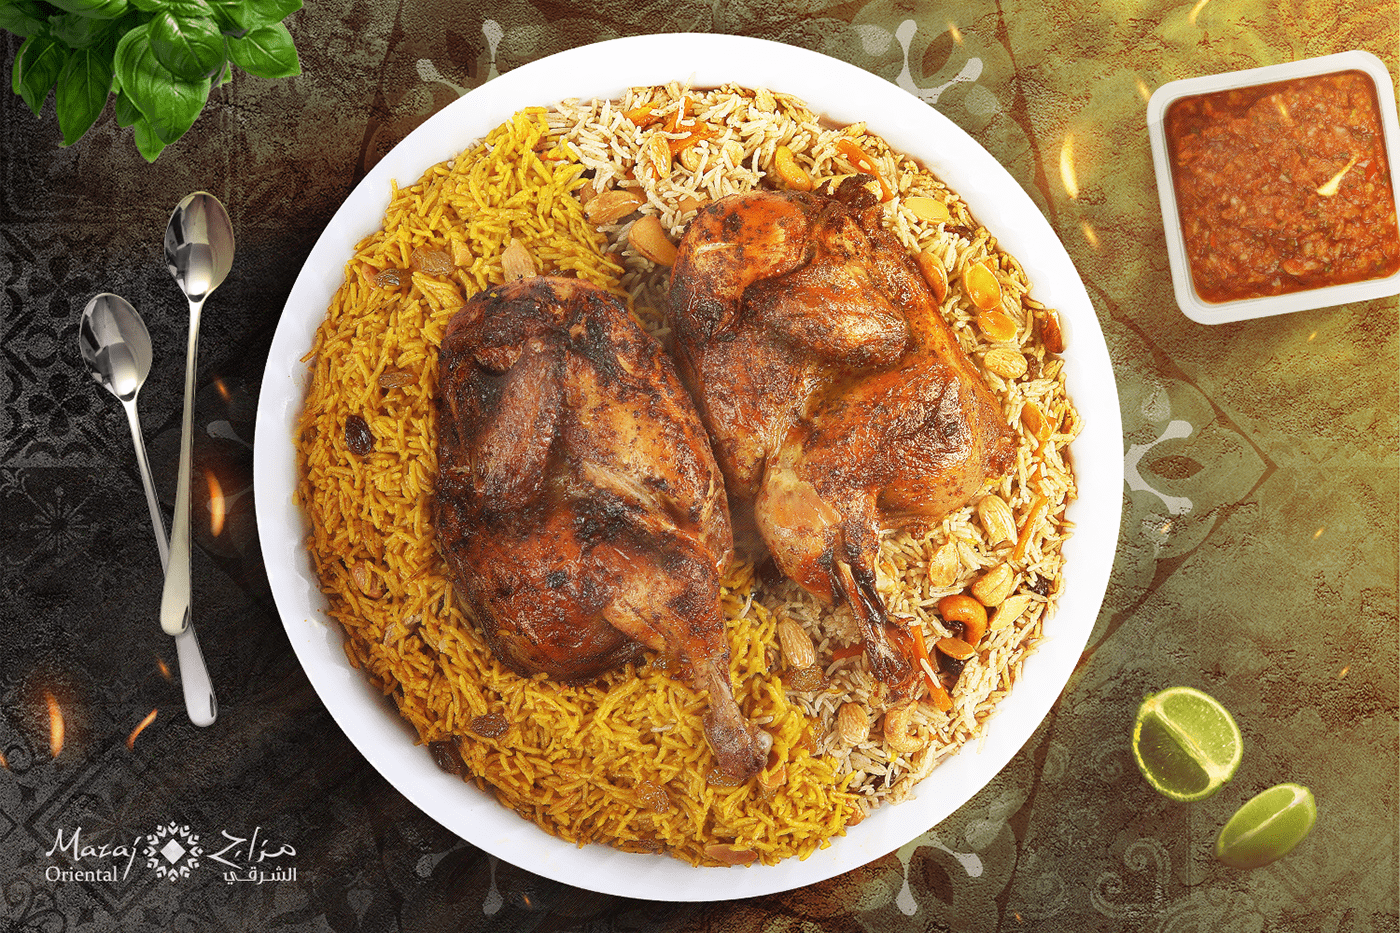 طعام شرقي orientalfood الطعام العربي فن أرز دجاج جوز ورقة الشجر Arabesque